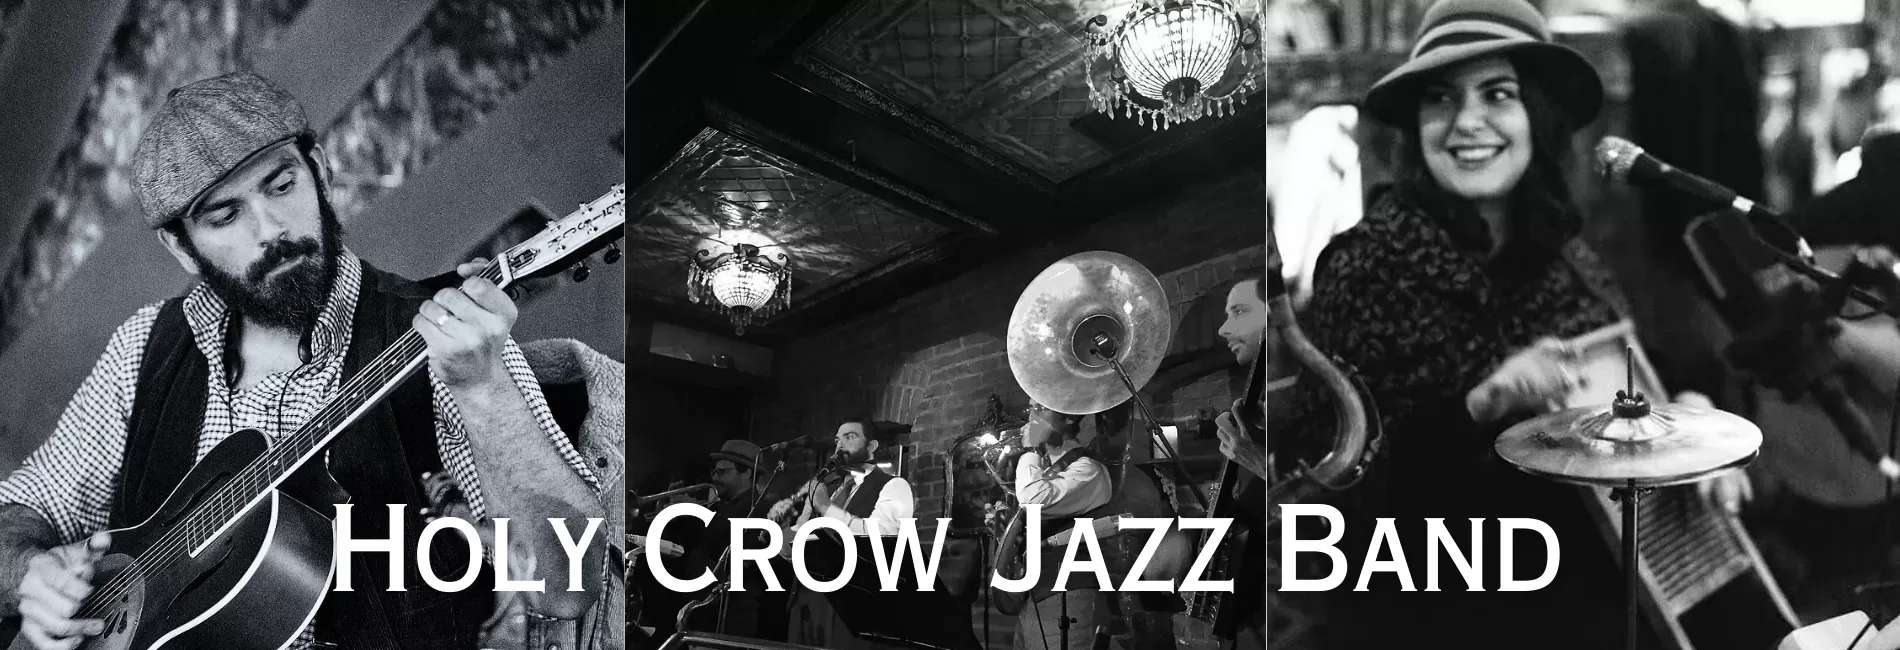 Holy Crow Jazz Band